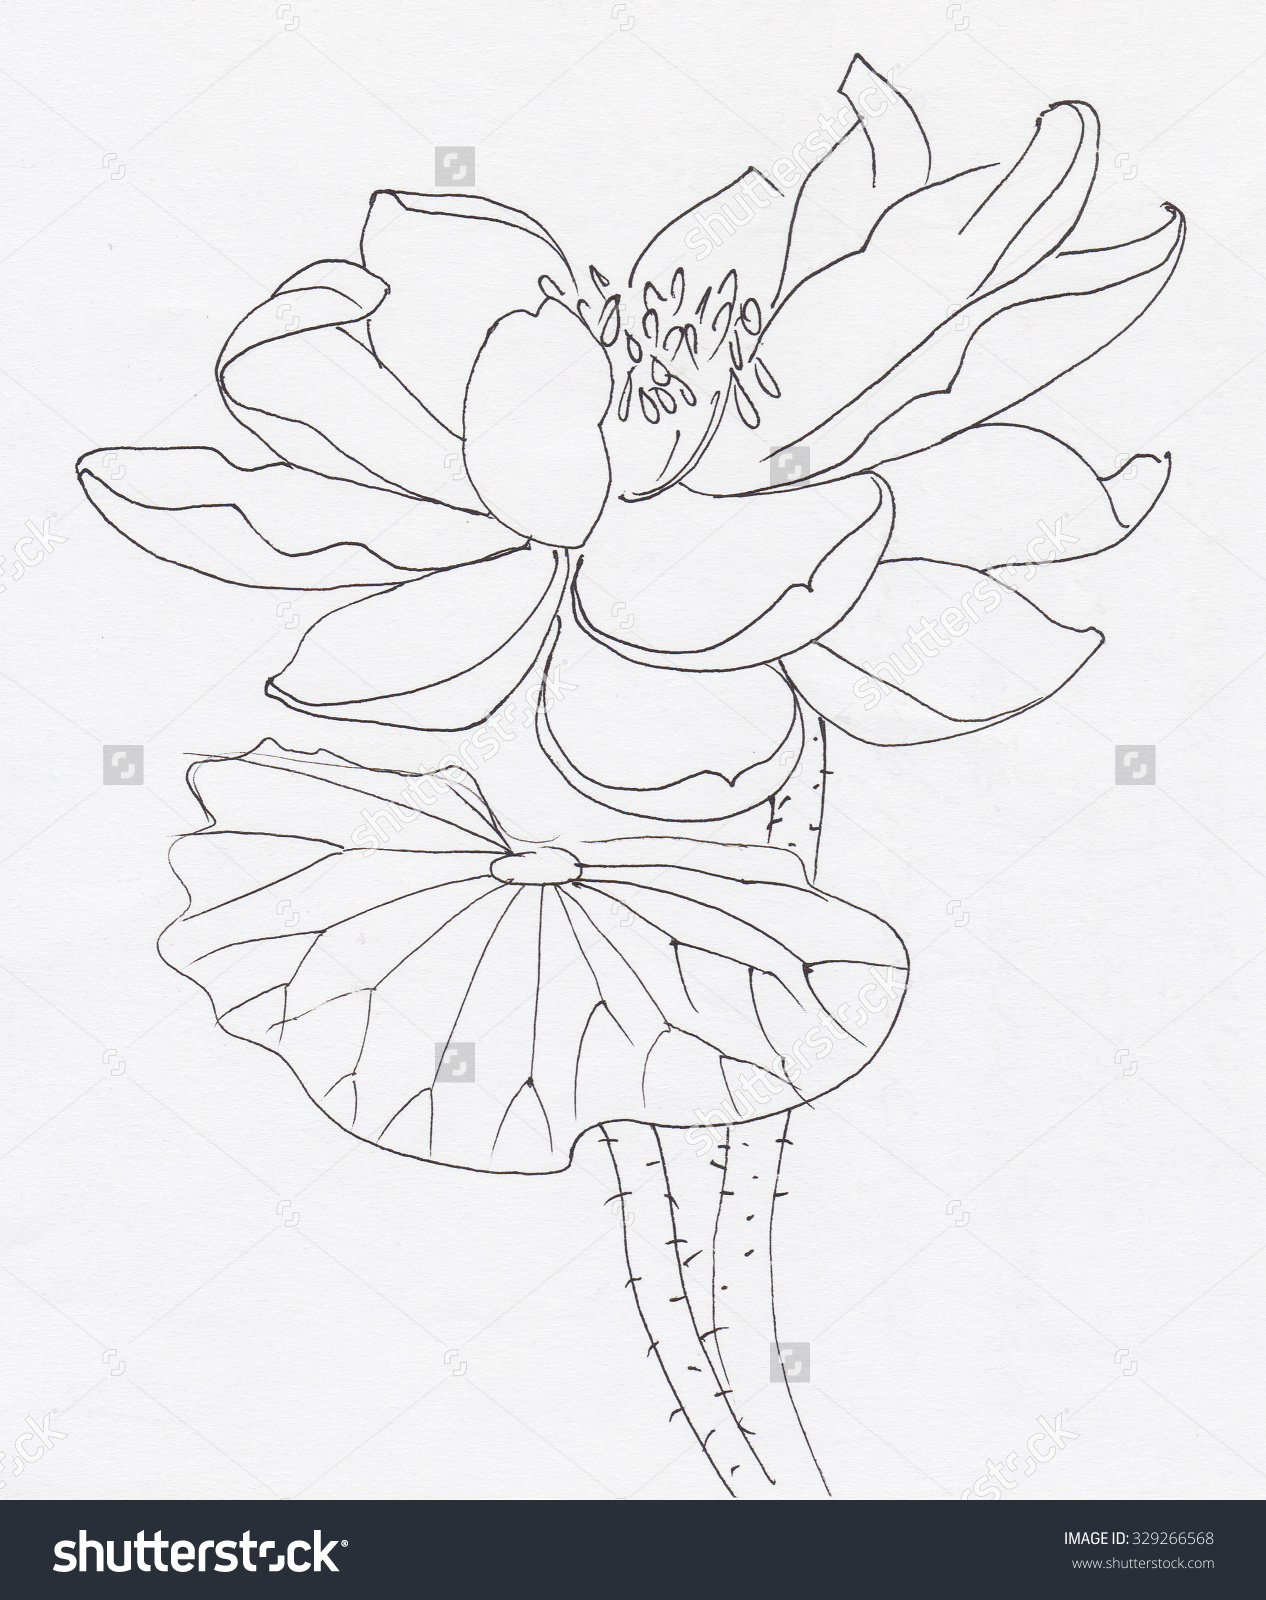 Lotus Flower Drawing Sketch at GetDrawings | Free download